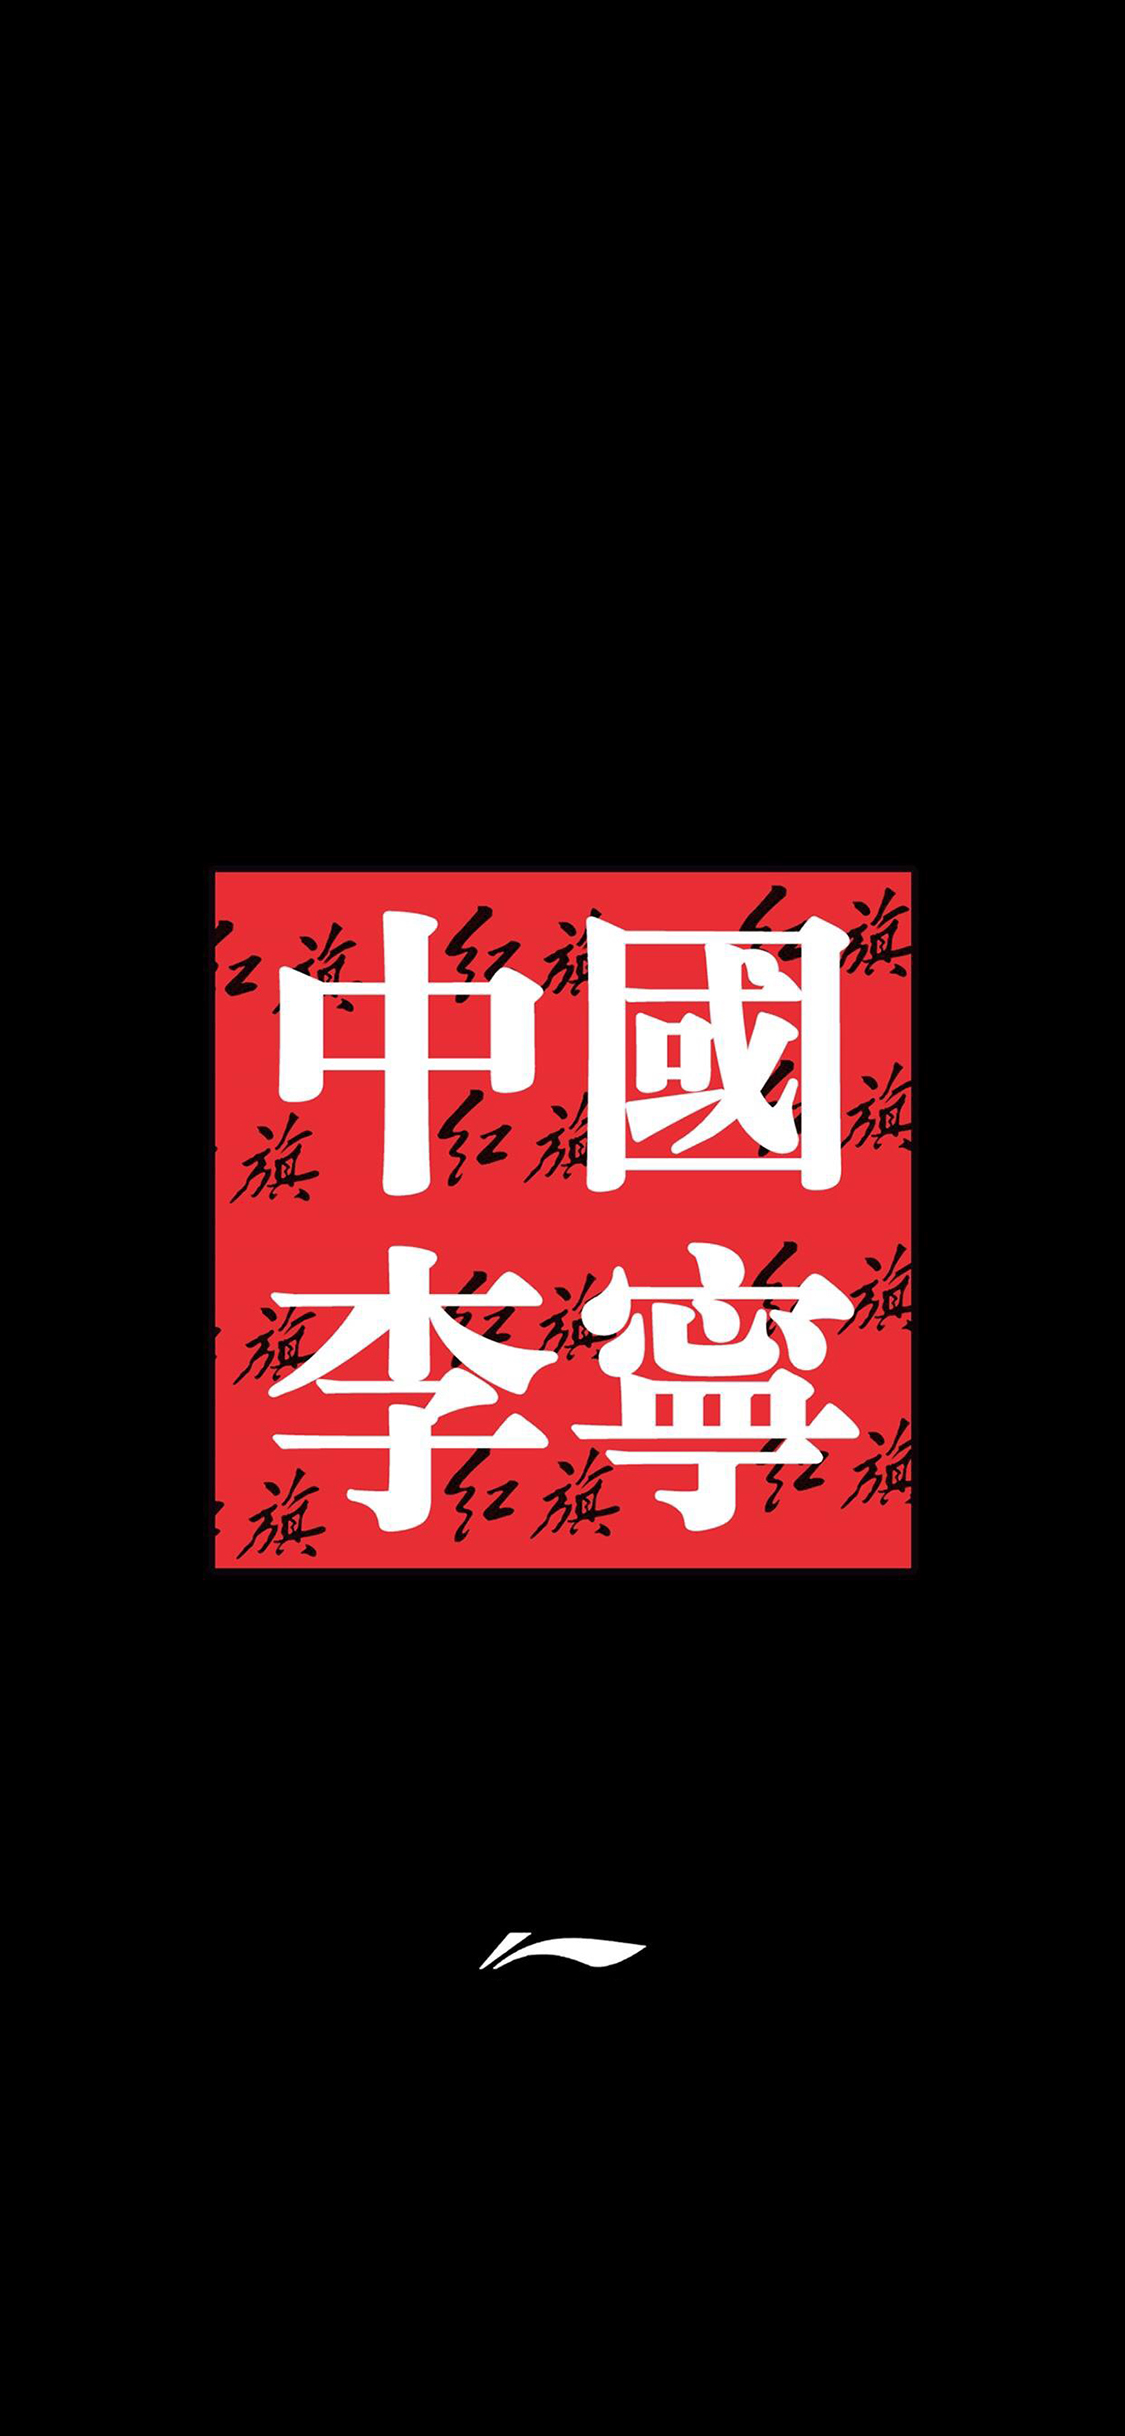 中国李宁 品牌 运动 红旗 logo 黑色 苹果手机高清 x